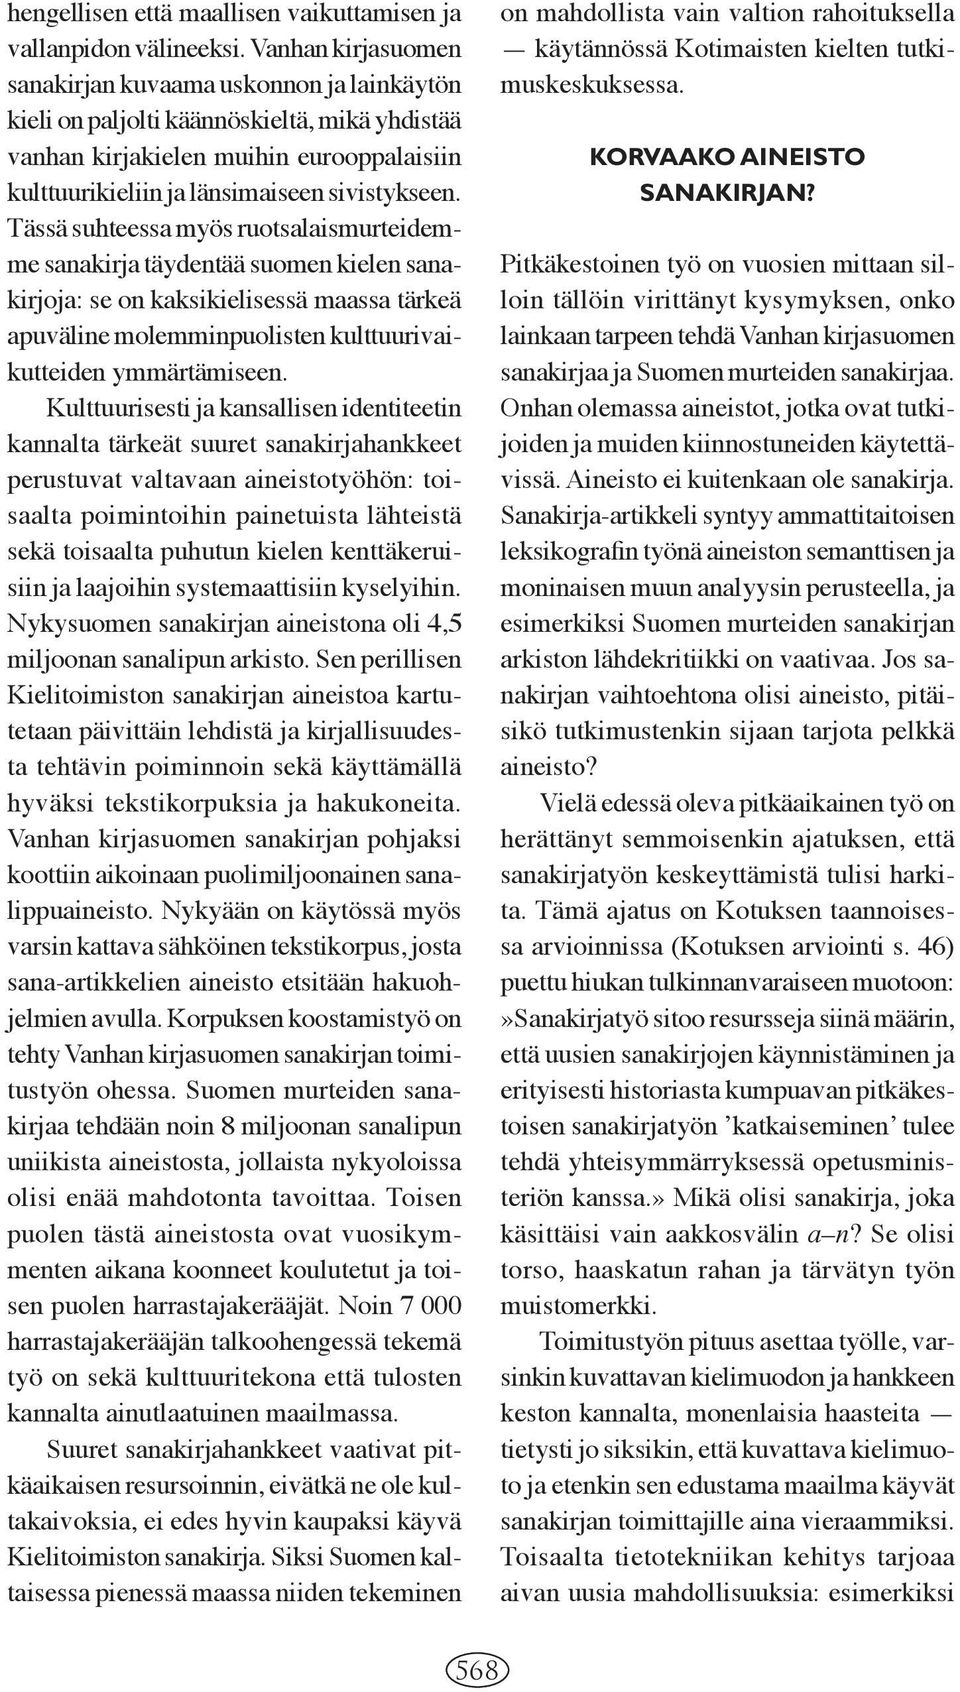 Tässä suhteessa myös ruotsalaismurteidemme sanakirja täydentää suomen kielen sanakirjoja: se on kaksikielisessä maassa tärkeä apuväline molemminpuolisten kulttuurivaikutteiden ymmärtämiseen.